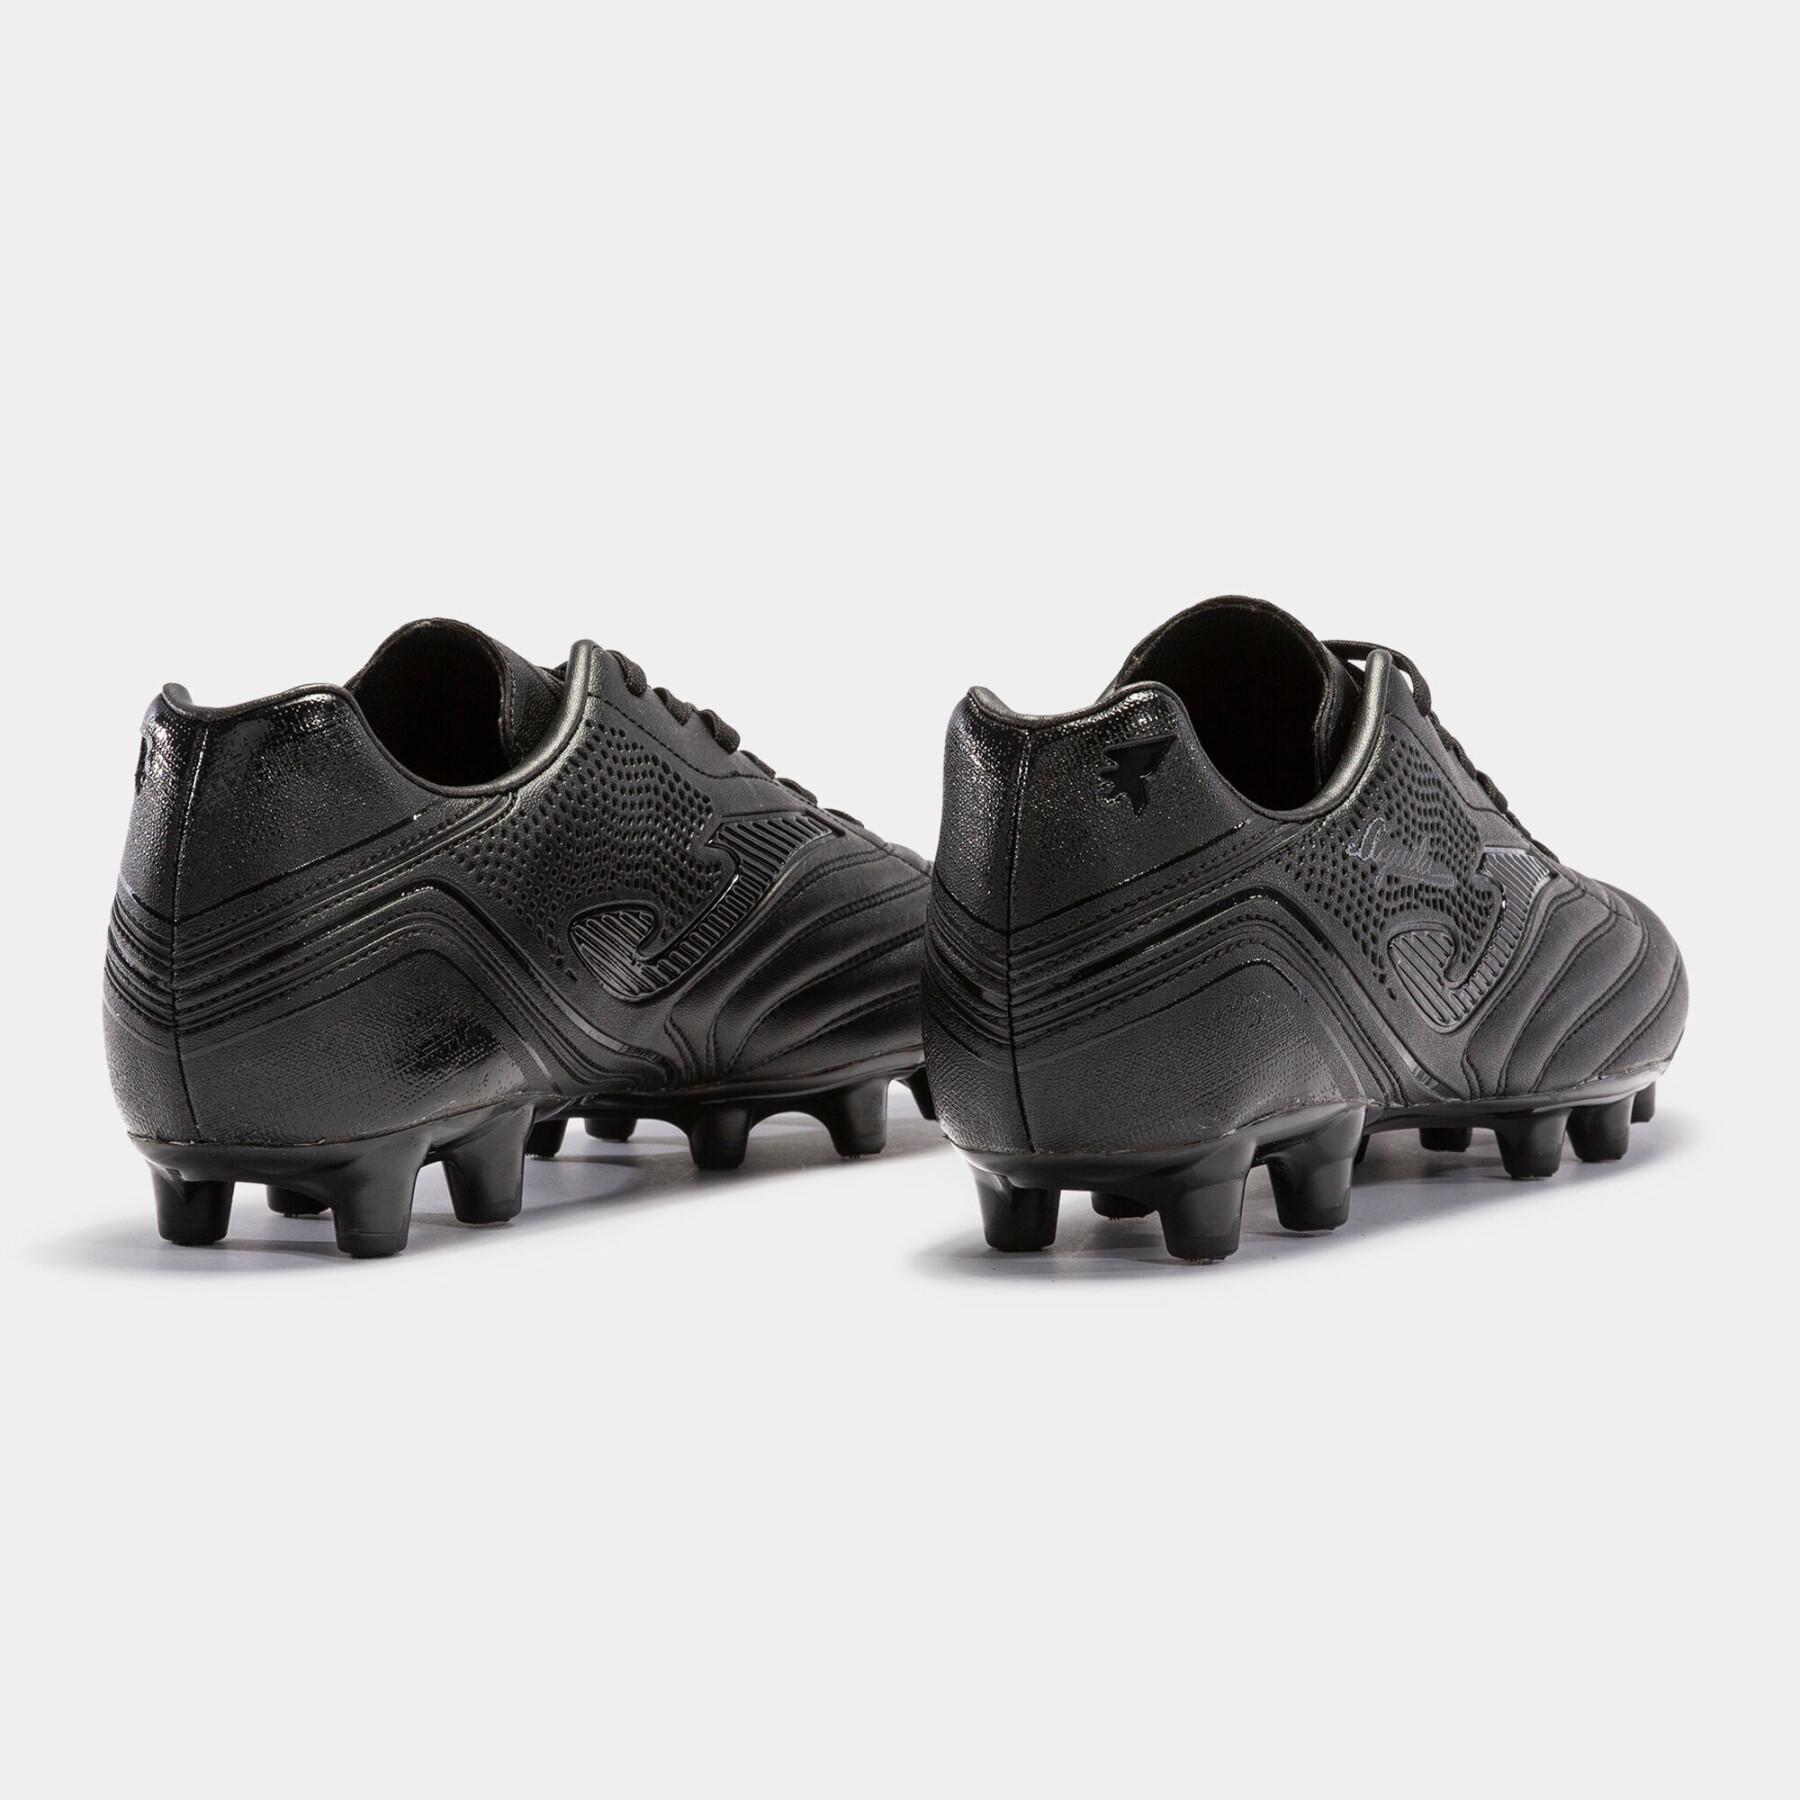 Soccer shoes Joma Aguila 2321 AG